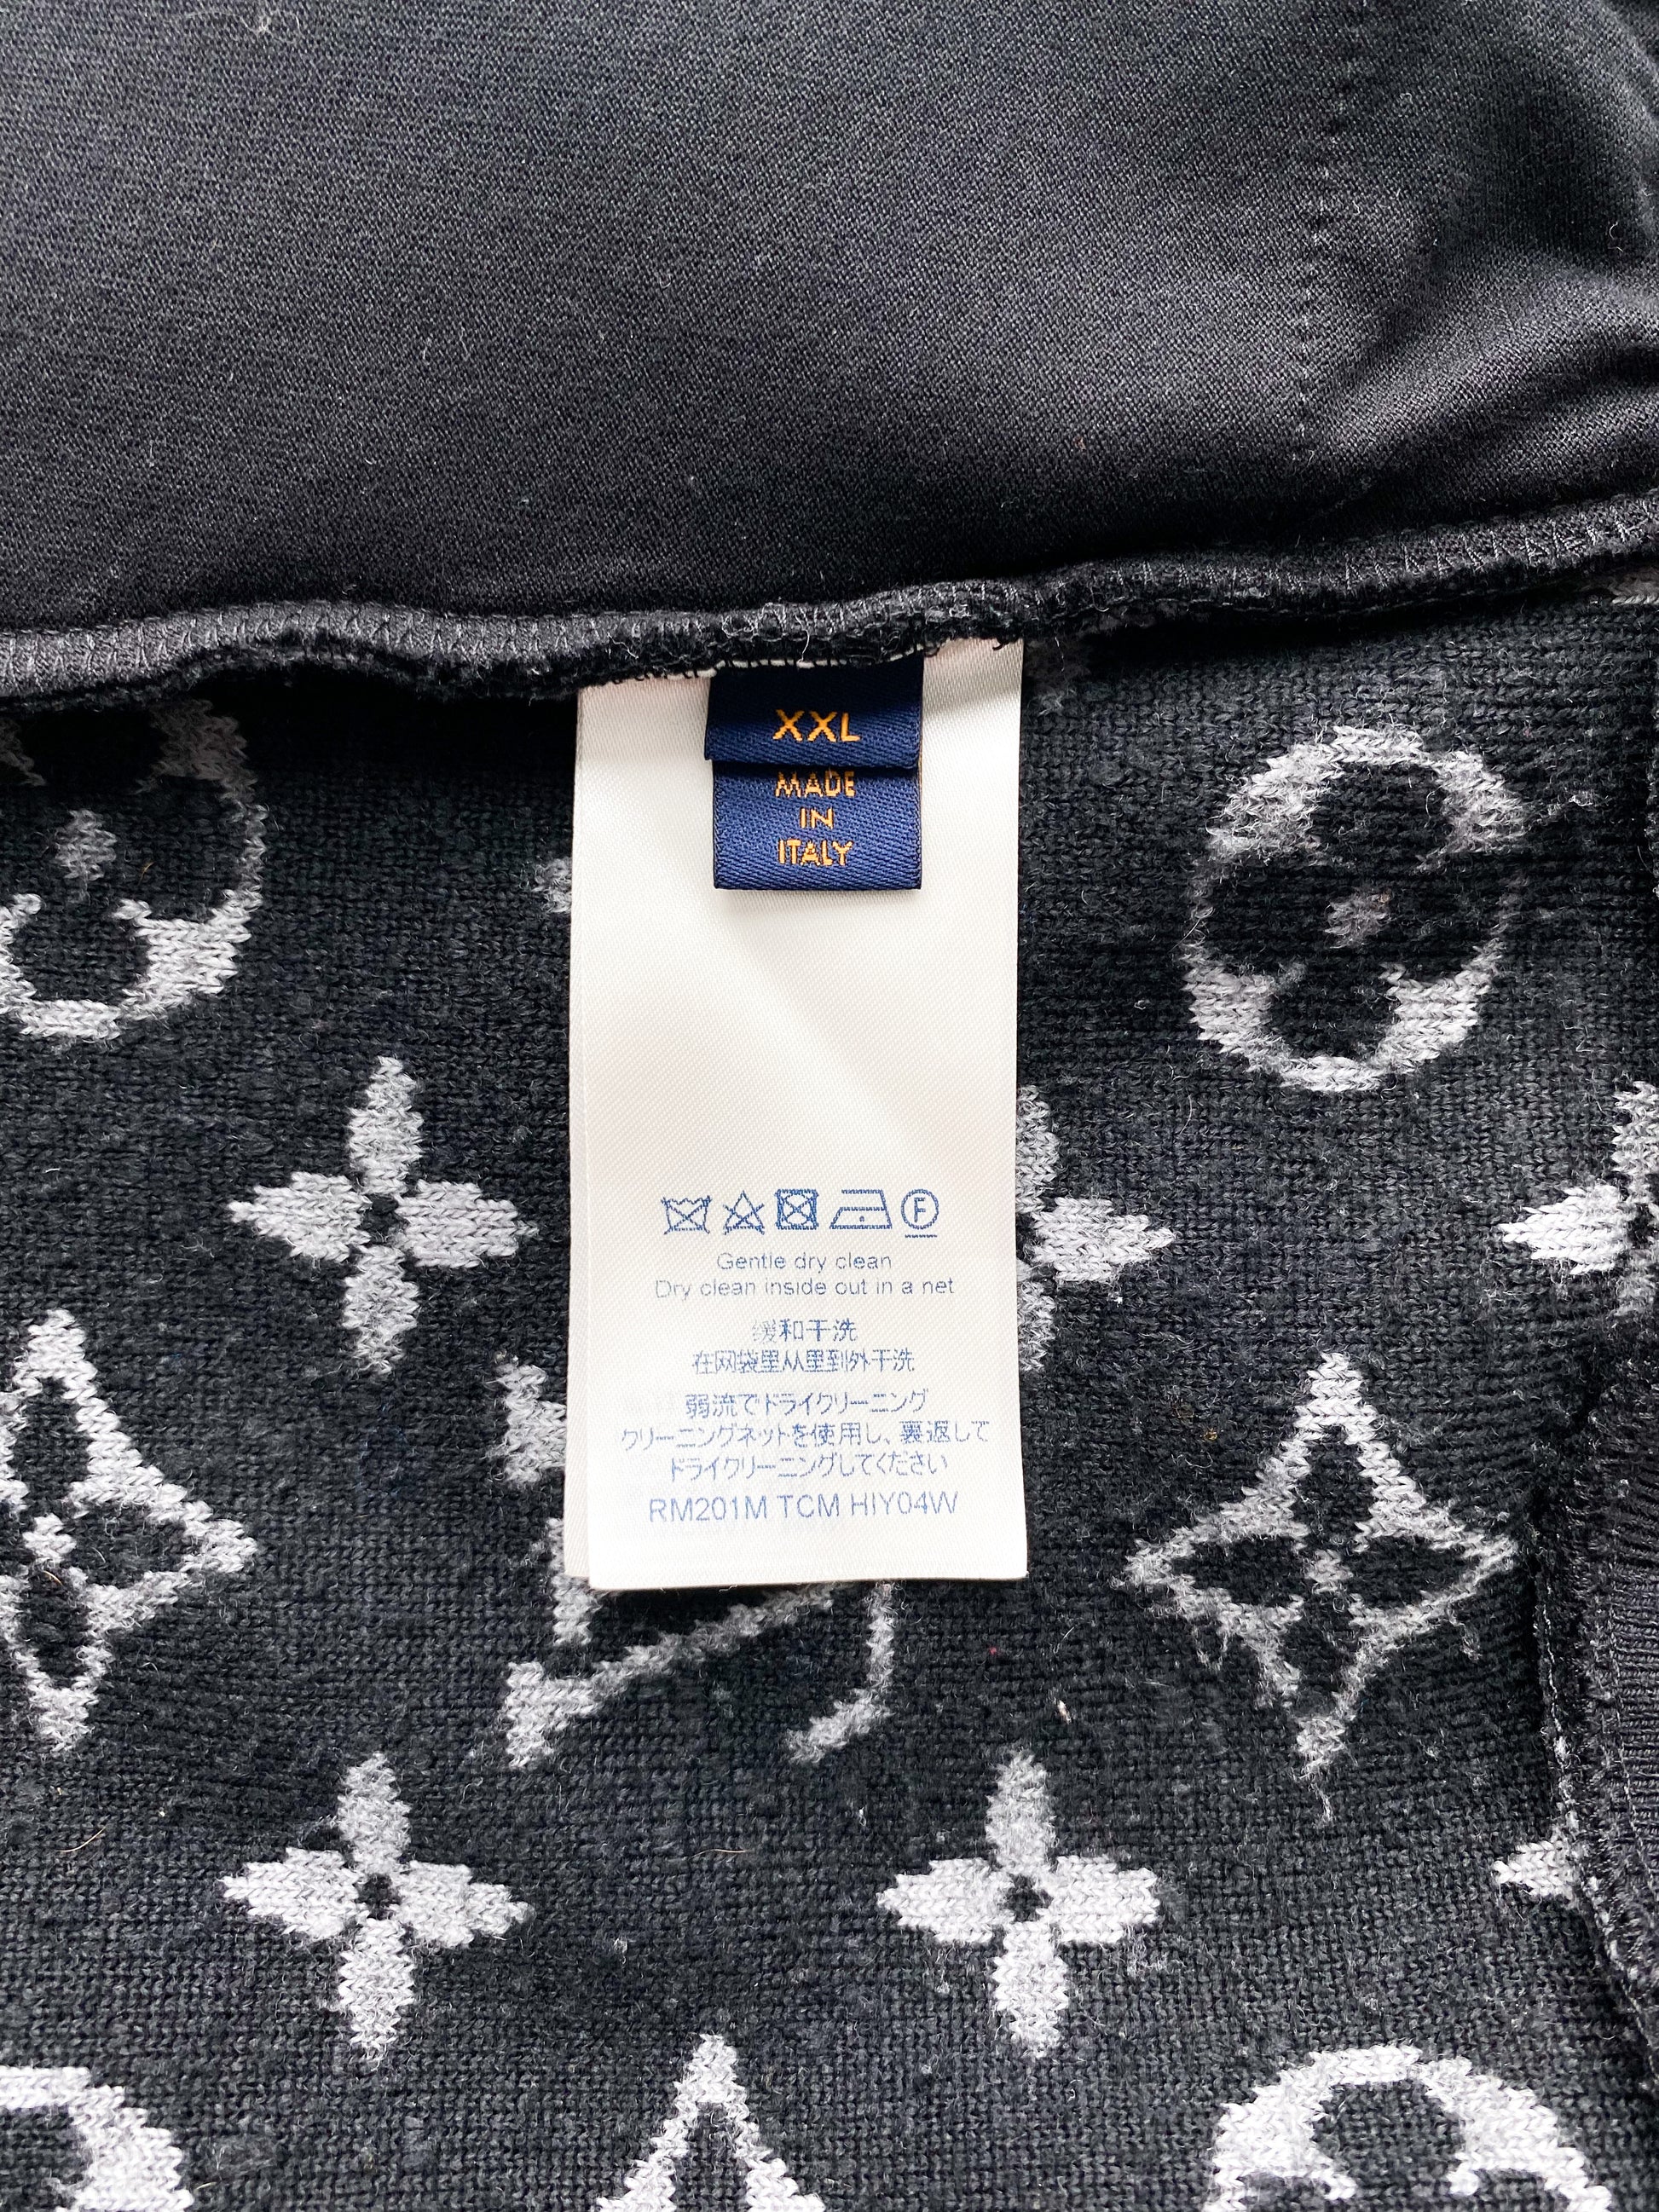 Louis Vuitton Black Monogram Fleece Zip Up Jacket